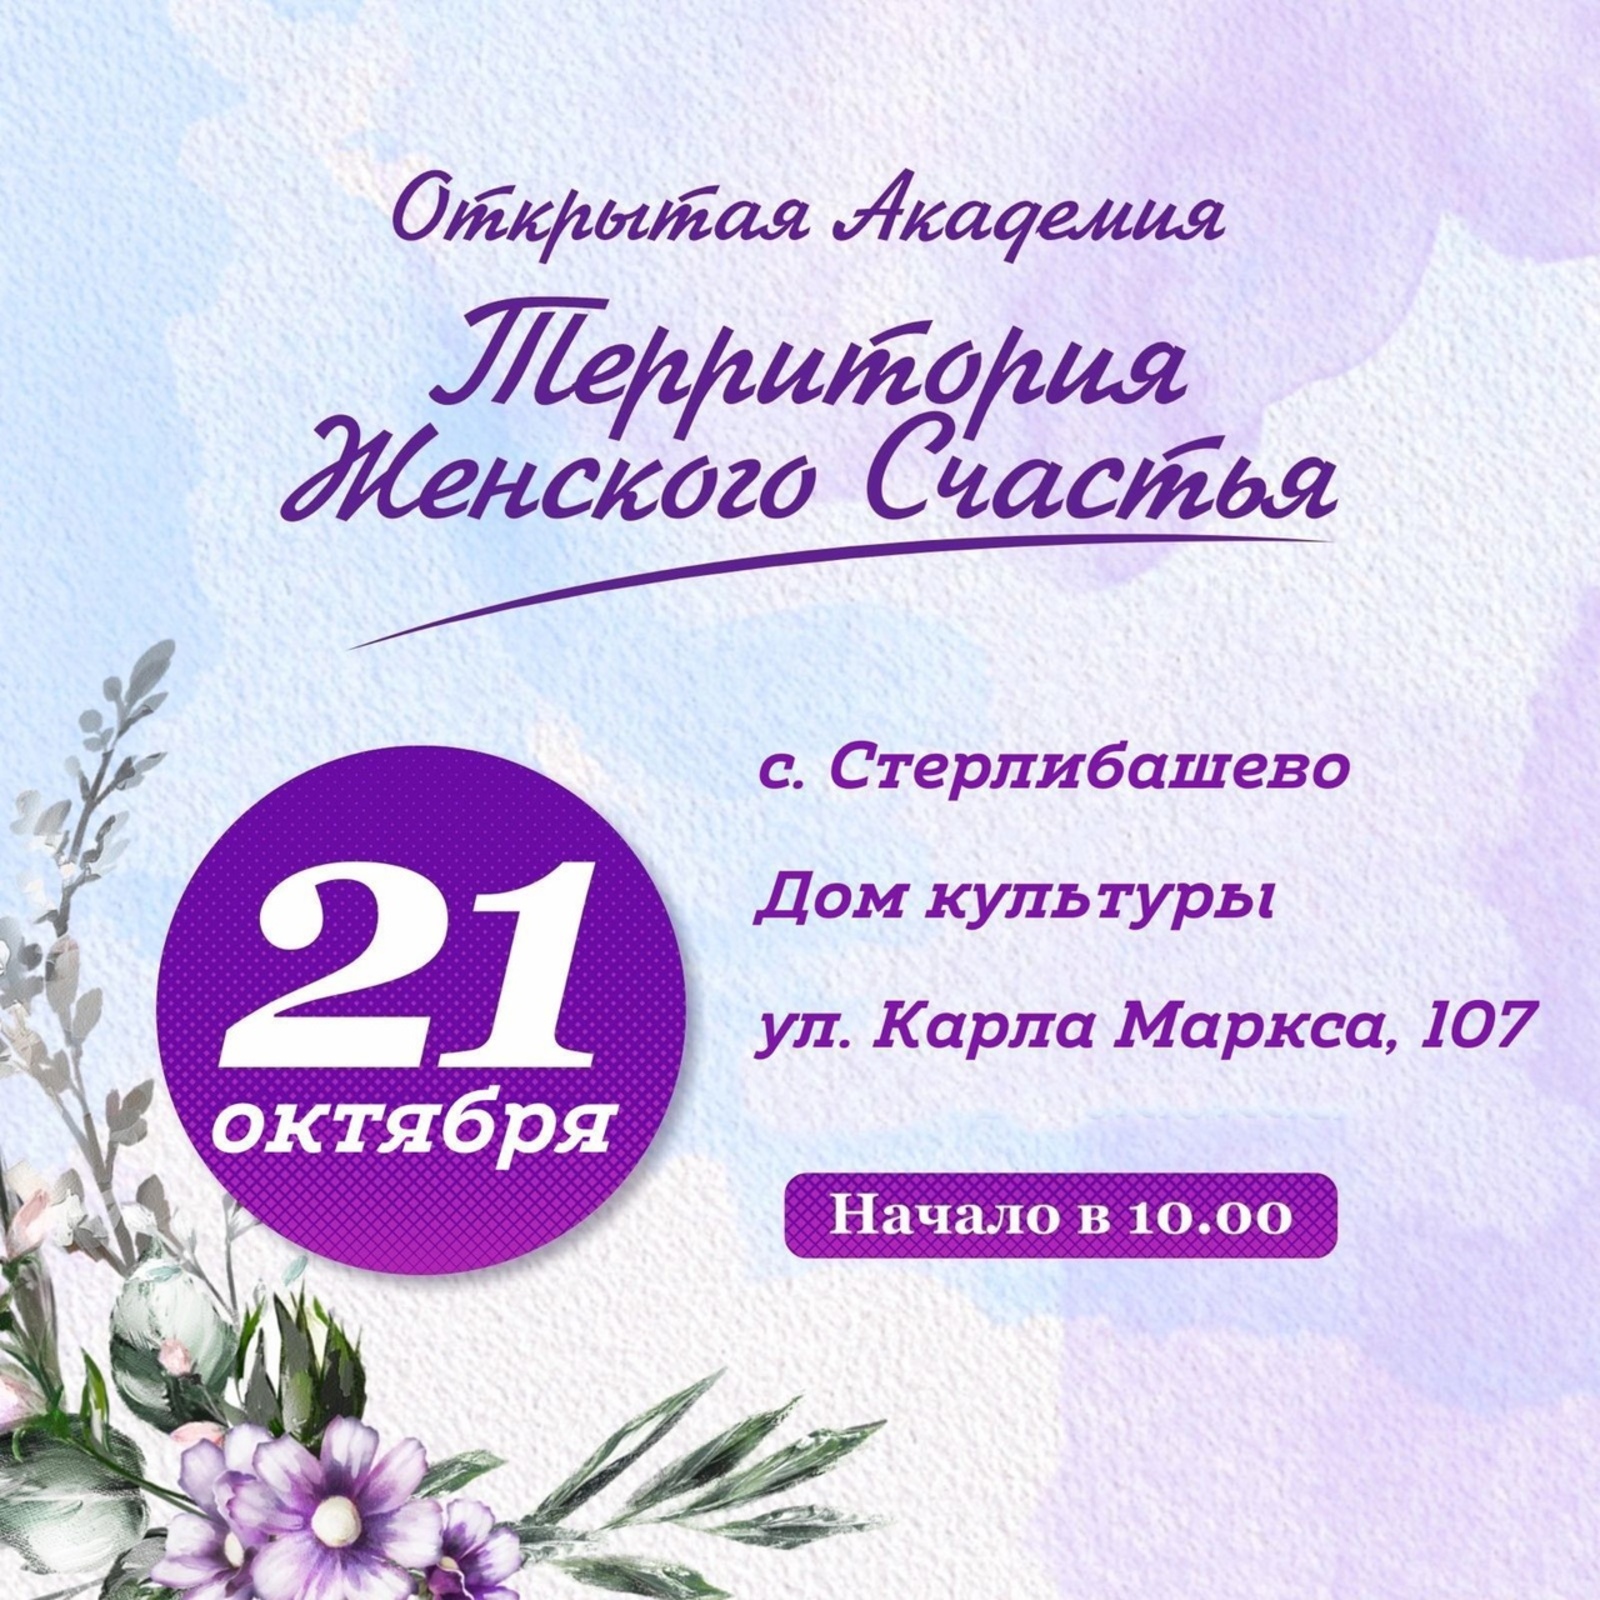 21 октября в с.Стерлибашево состоится открытая Академия «Территория Женского счастья»